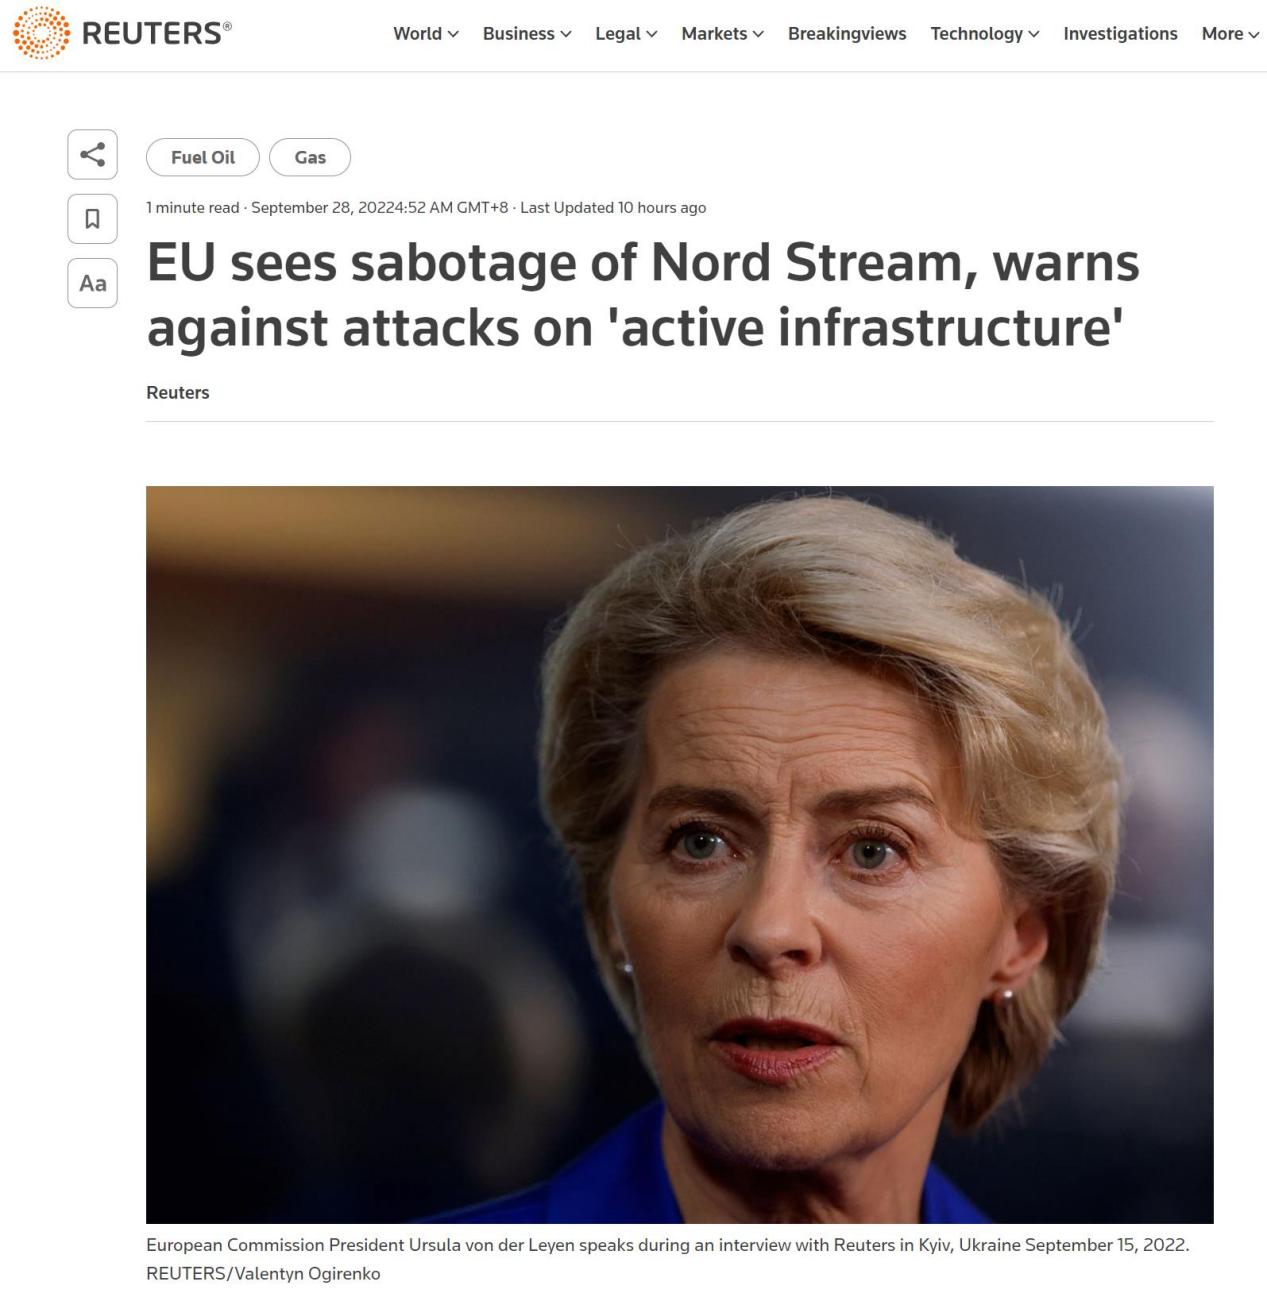 Европейские лидеры обвиняют Россию в «саботаже» после взрывов «Северного потока»